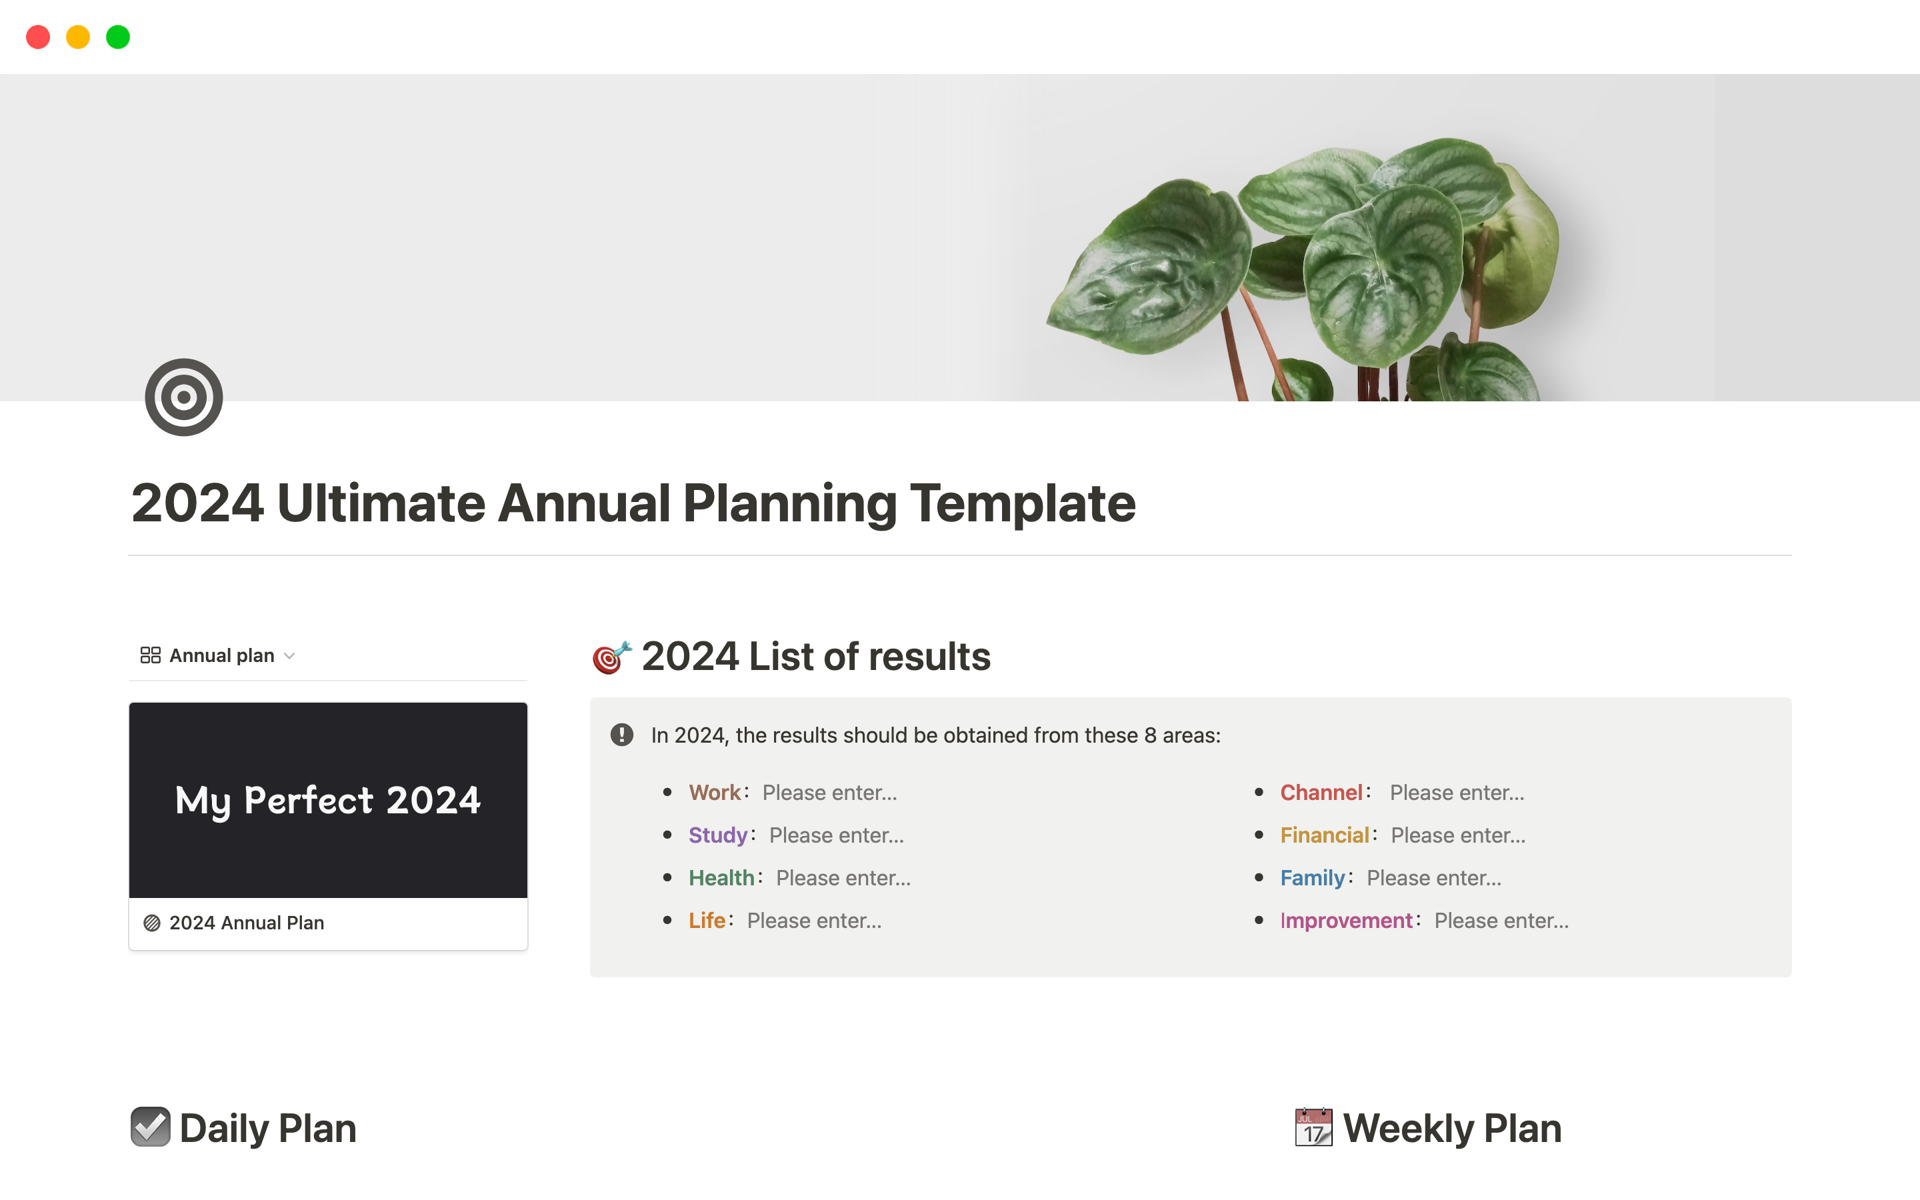 Uma prévia do modelo para 2024 Ultimate Annual Planning